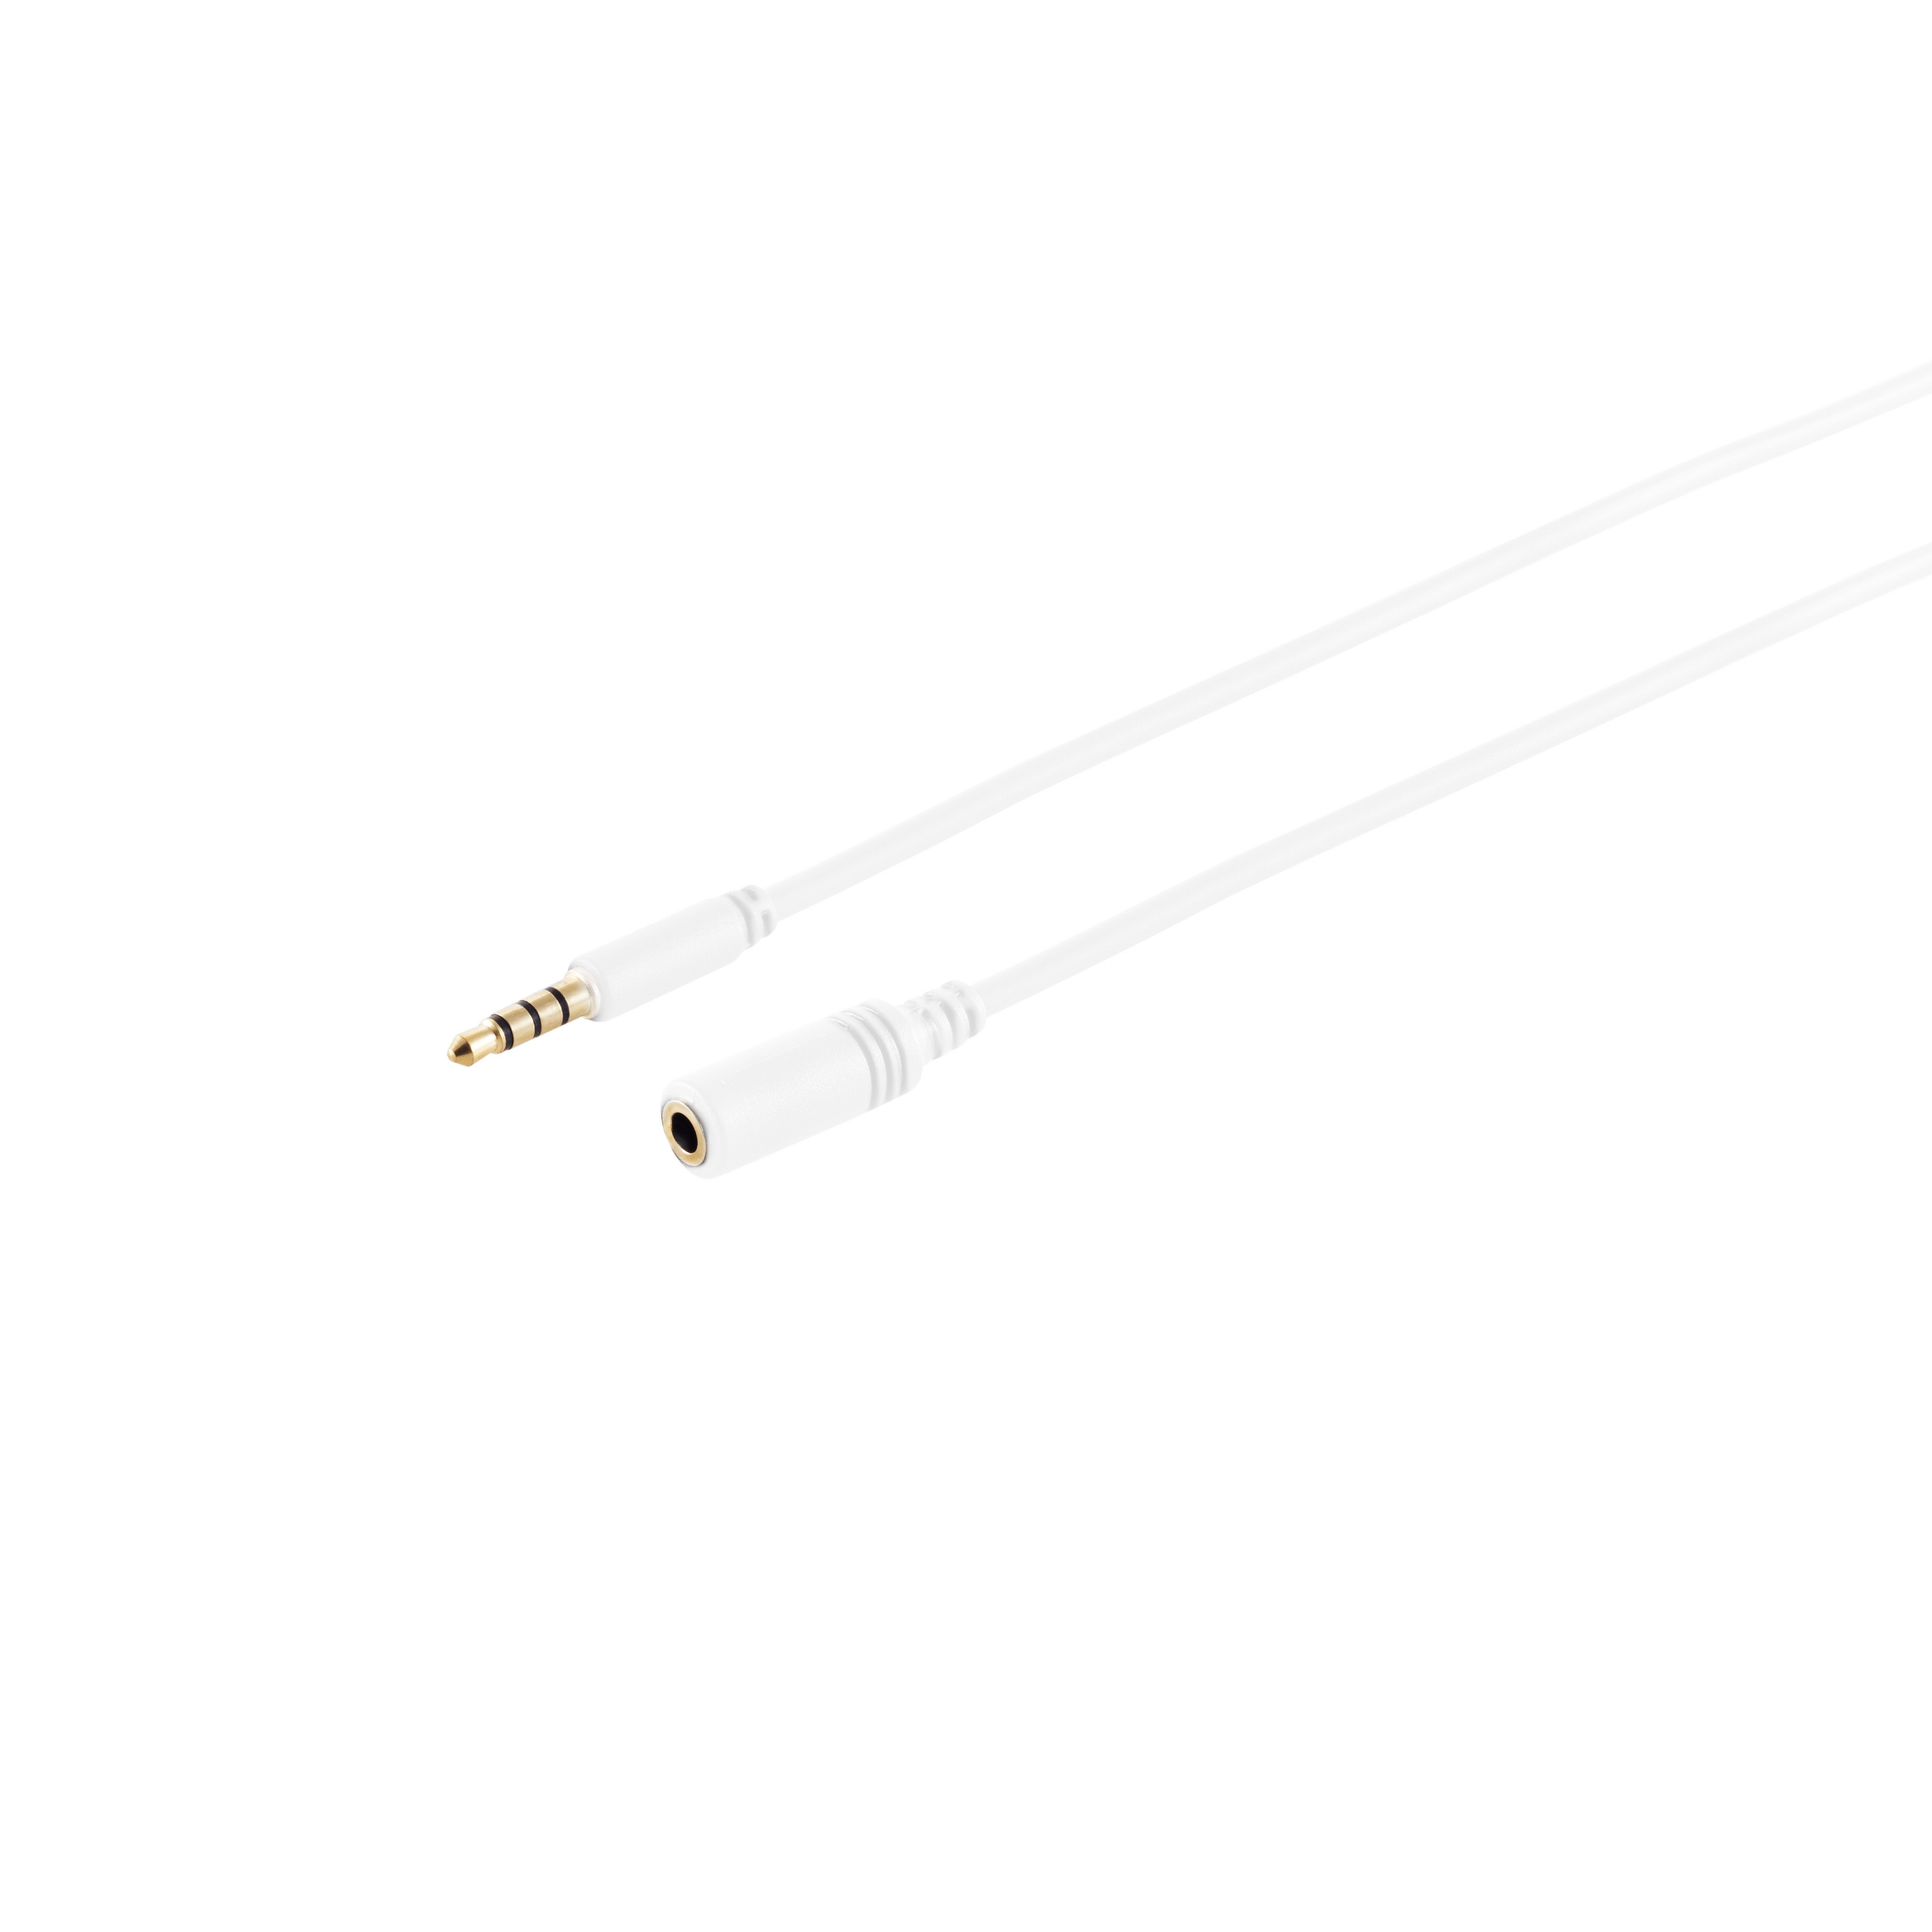 KABELBUDE 4-pol, 3,5mm m weiß, verg. 0,50 Klinkenverlängerung, Stecker/Buchse, 0,5m